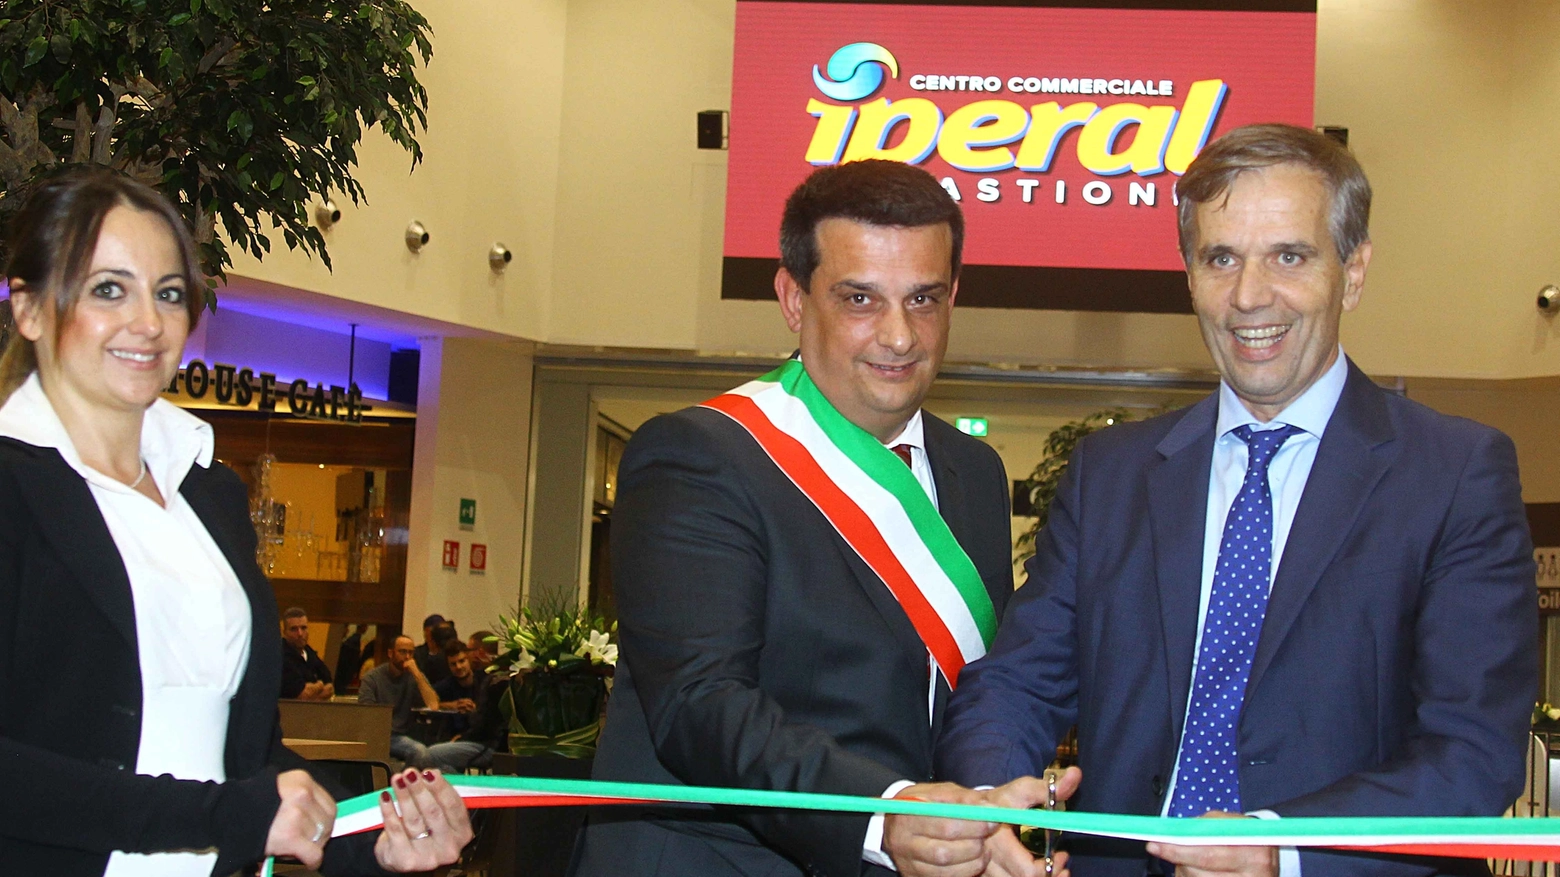  Massimiliano Franchetti e Antonio Tirelli inaugurano i nuovi spazi di Iperal